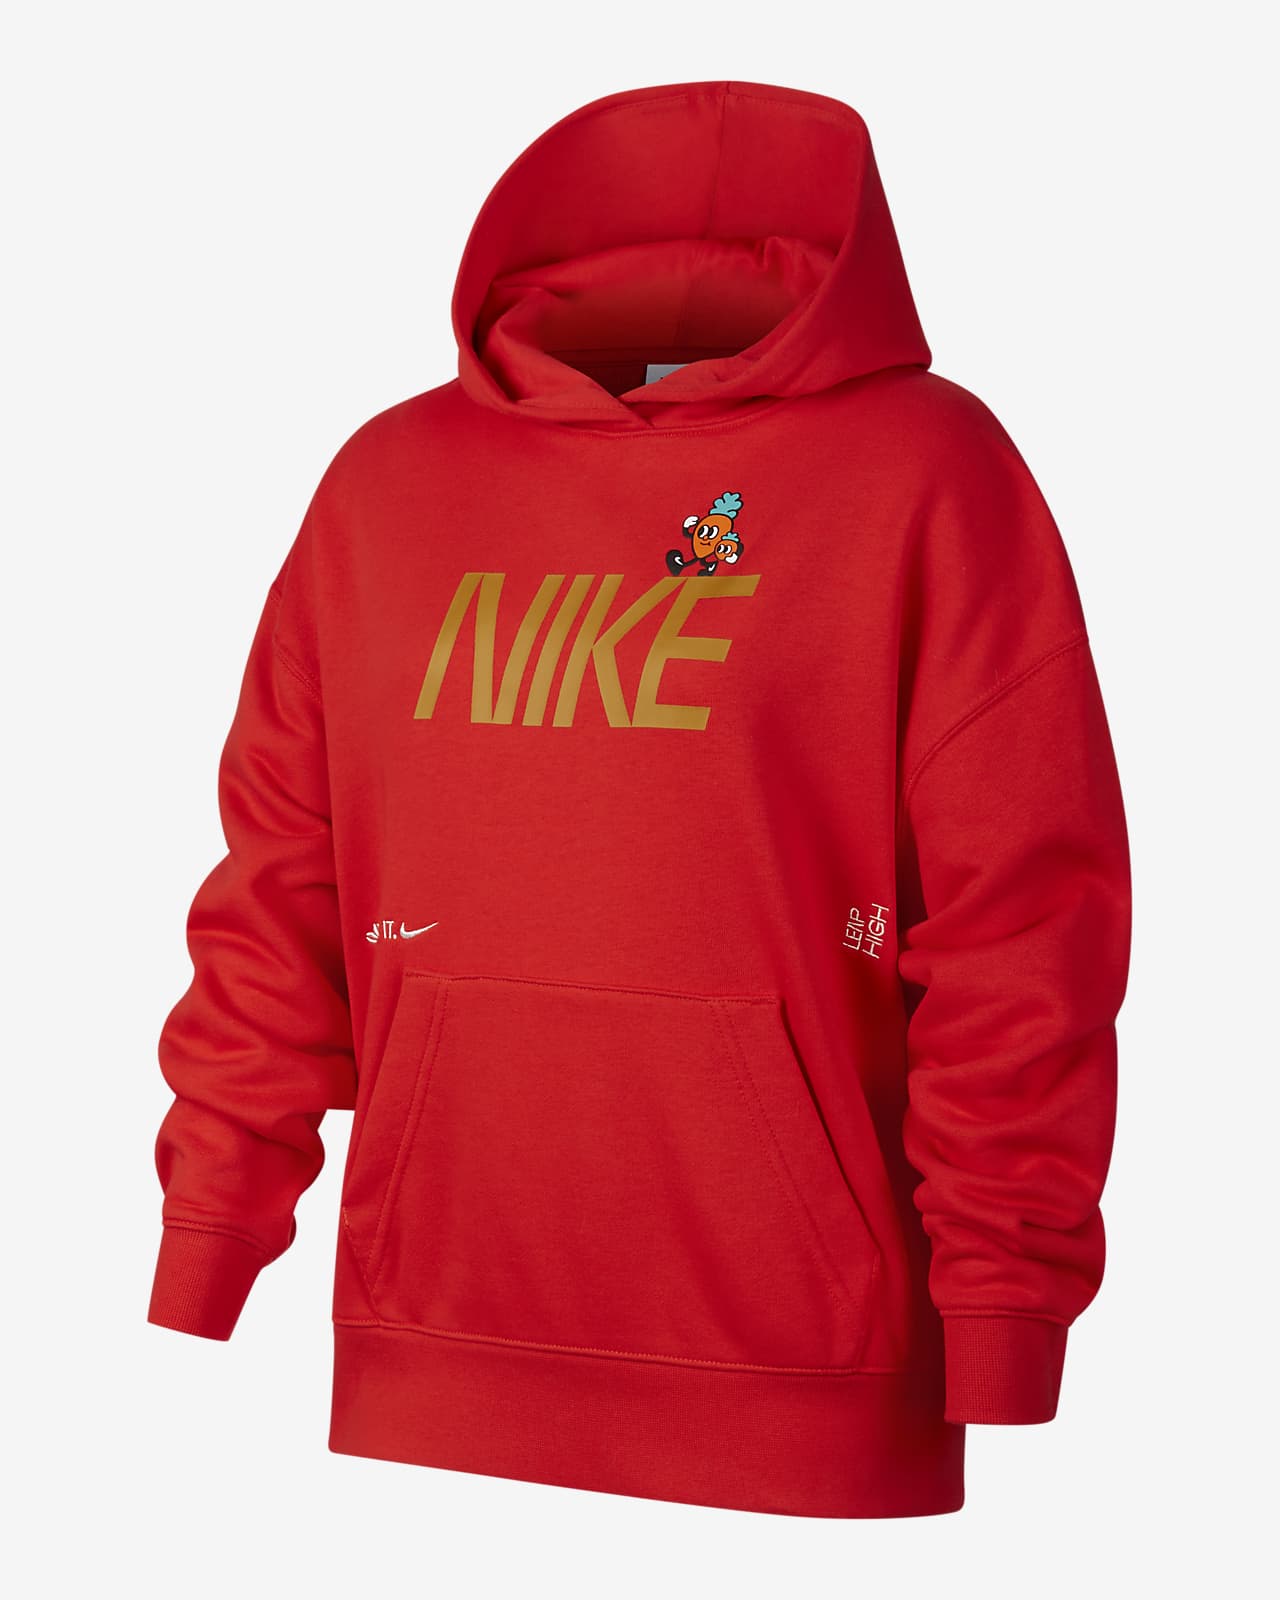 Nike Sportswear Older Kids' Pullover Fleece Hoodie